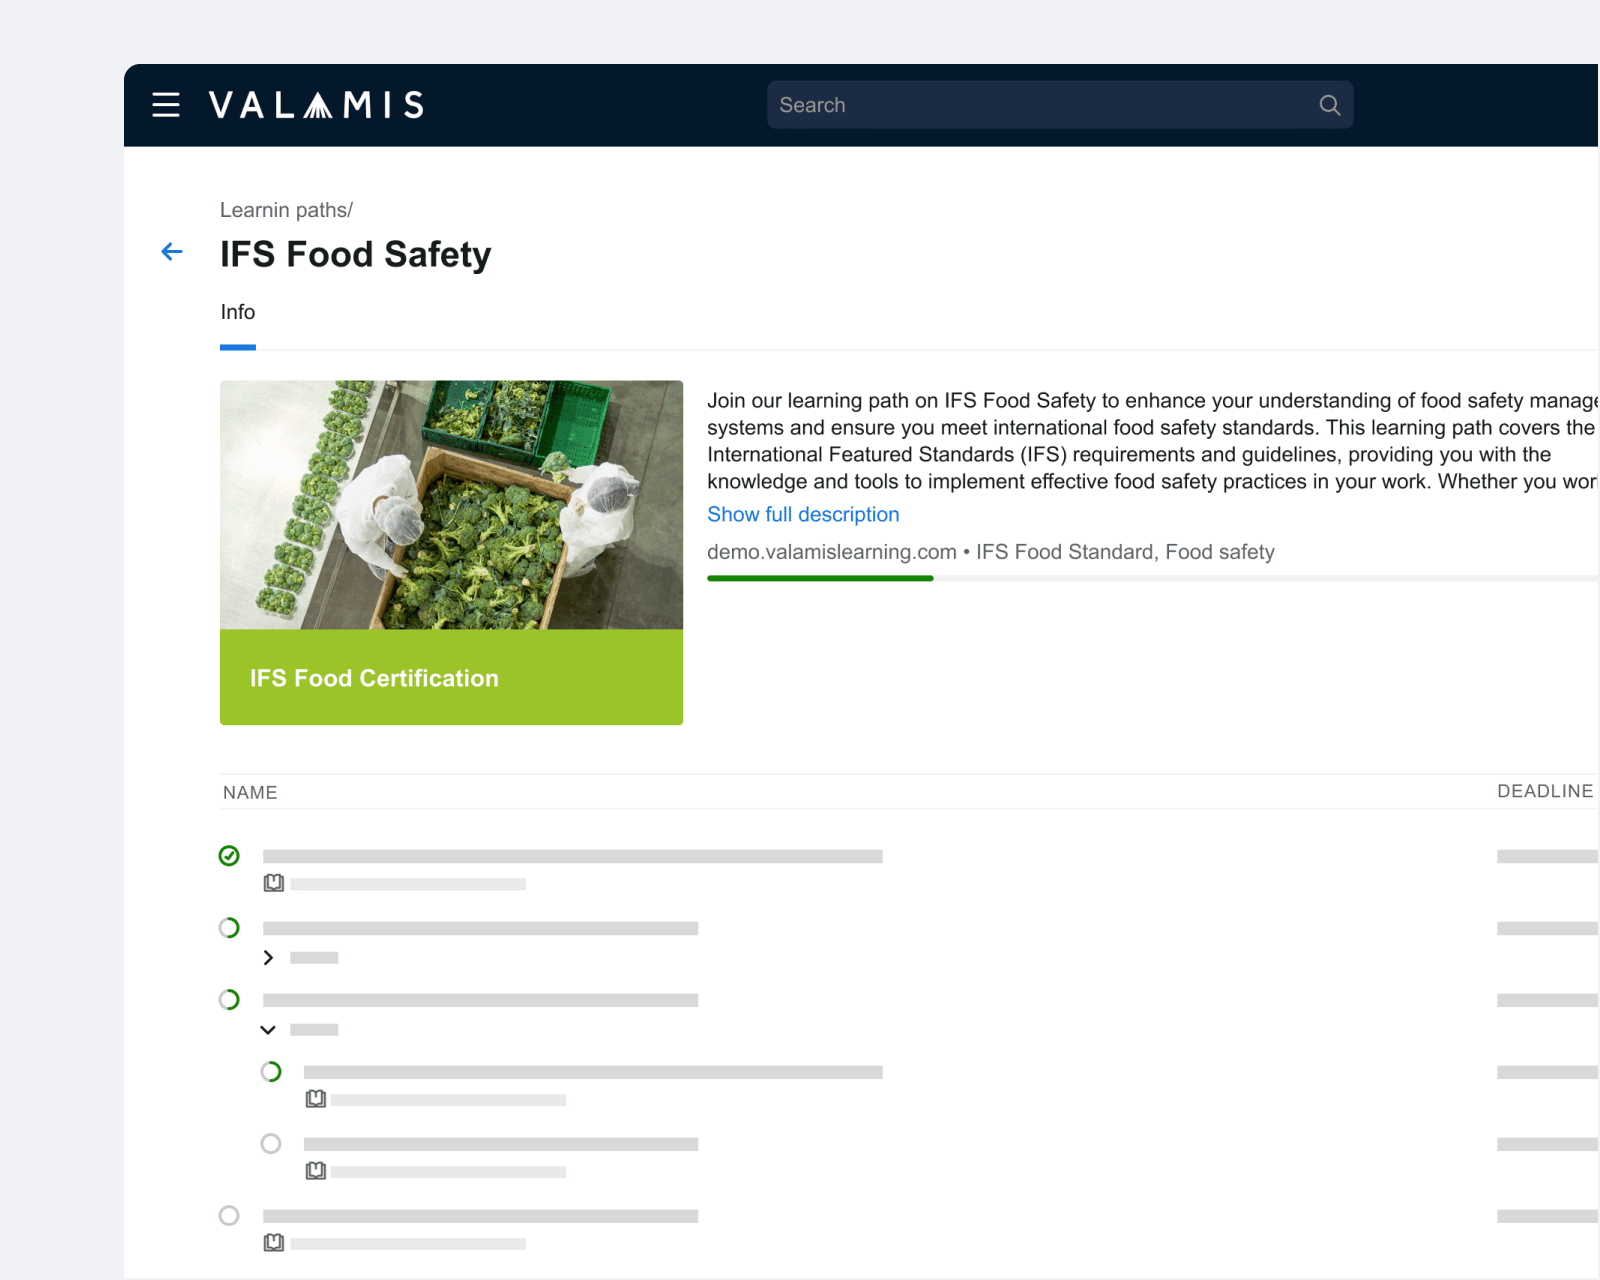 Beispiel der Valamis-Plattform für die IFS-Schulung zur Lebensmittelsicherheit